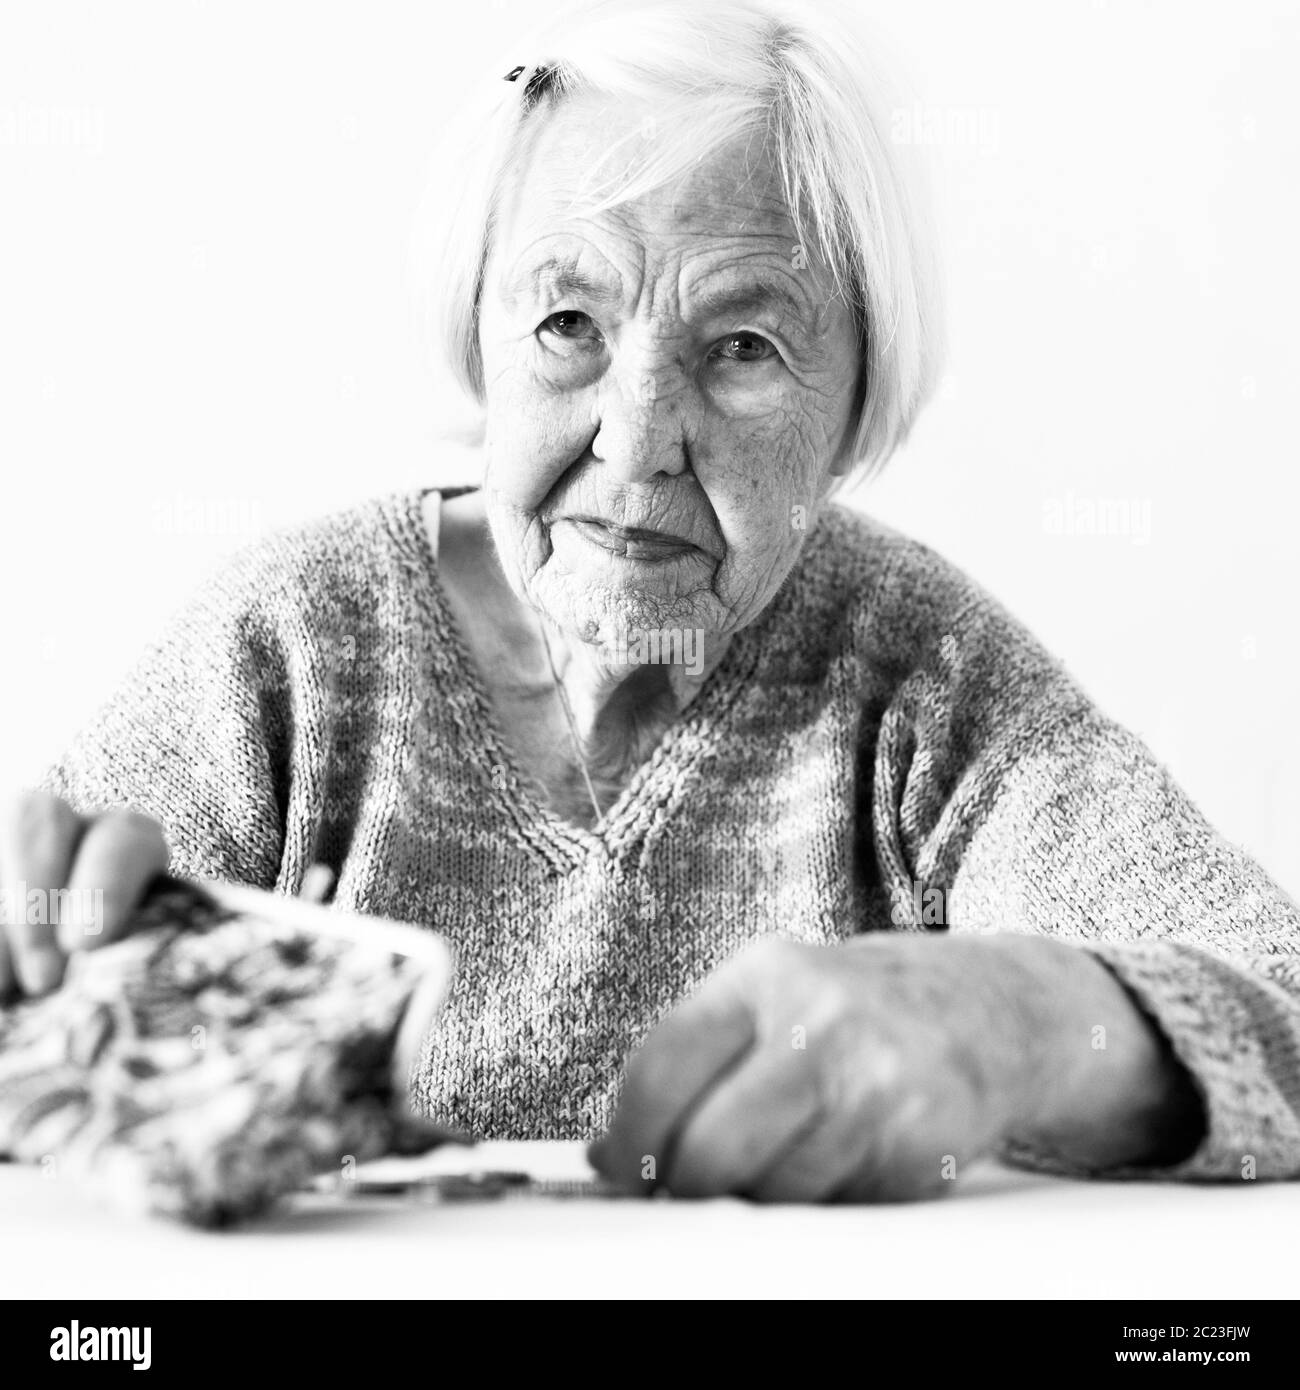 Betroffene ältere Menschen 96 Jahre alte Frau am Tisch zu Hause sitzen und zählen noch Münzen von der Pension in Ihrem Portemonnaie nach Rechnungen bezahlen. Unsustainabi Stockfoto